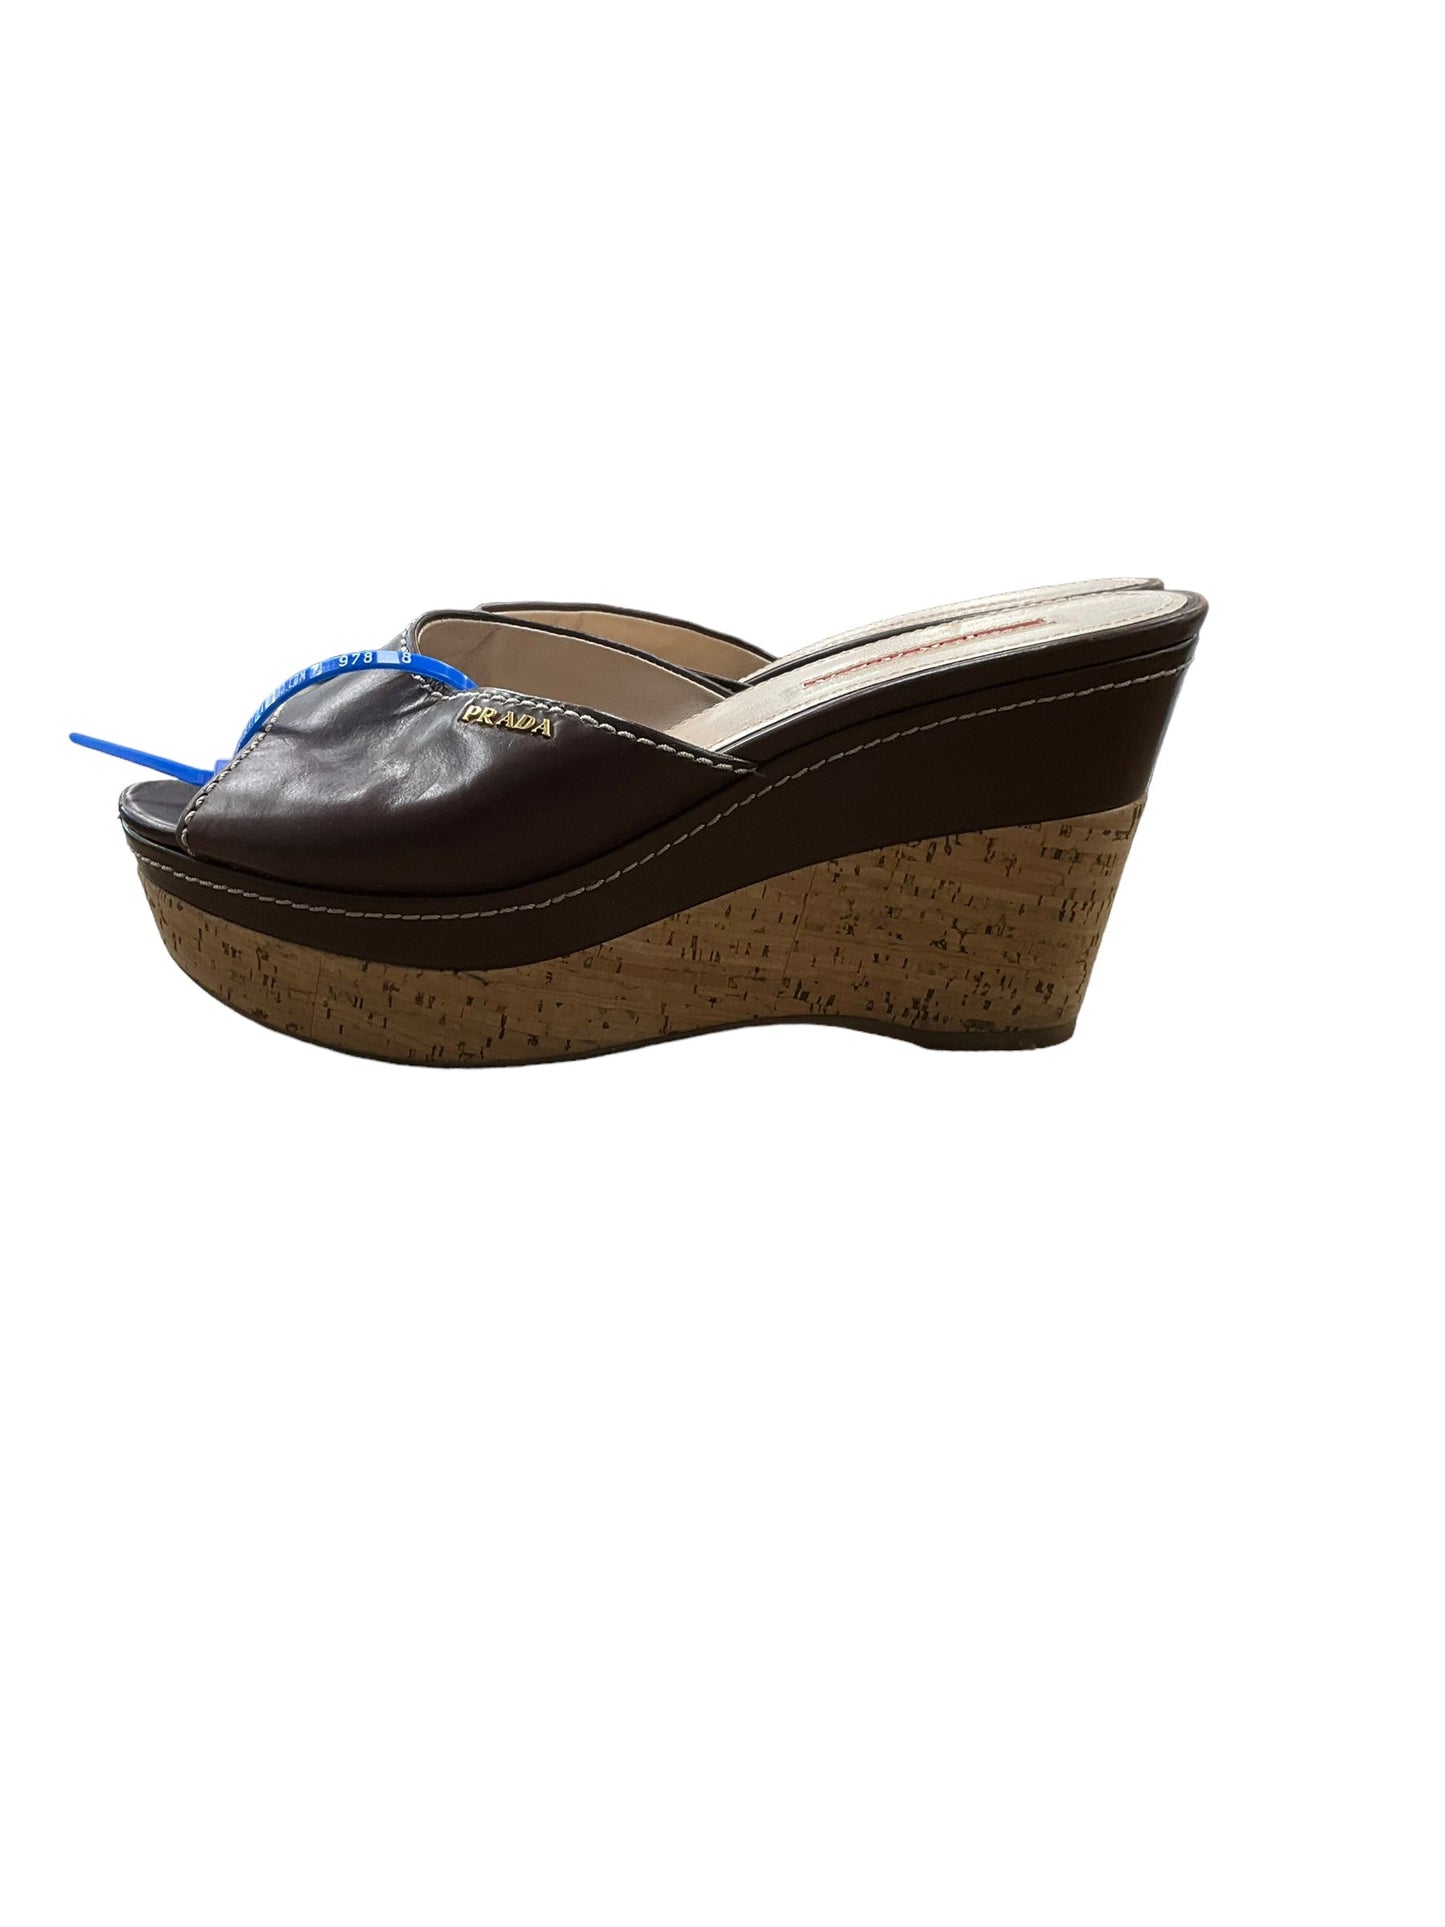 Brown Sandals Luxury Designer Prada, Size 6.5